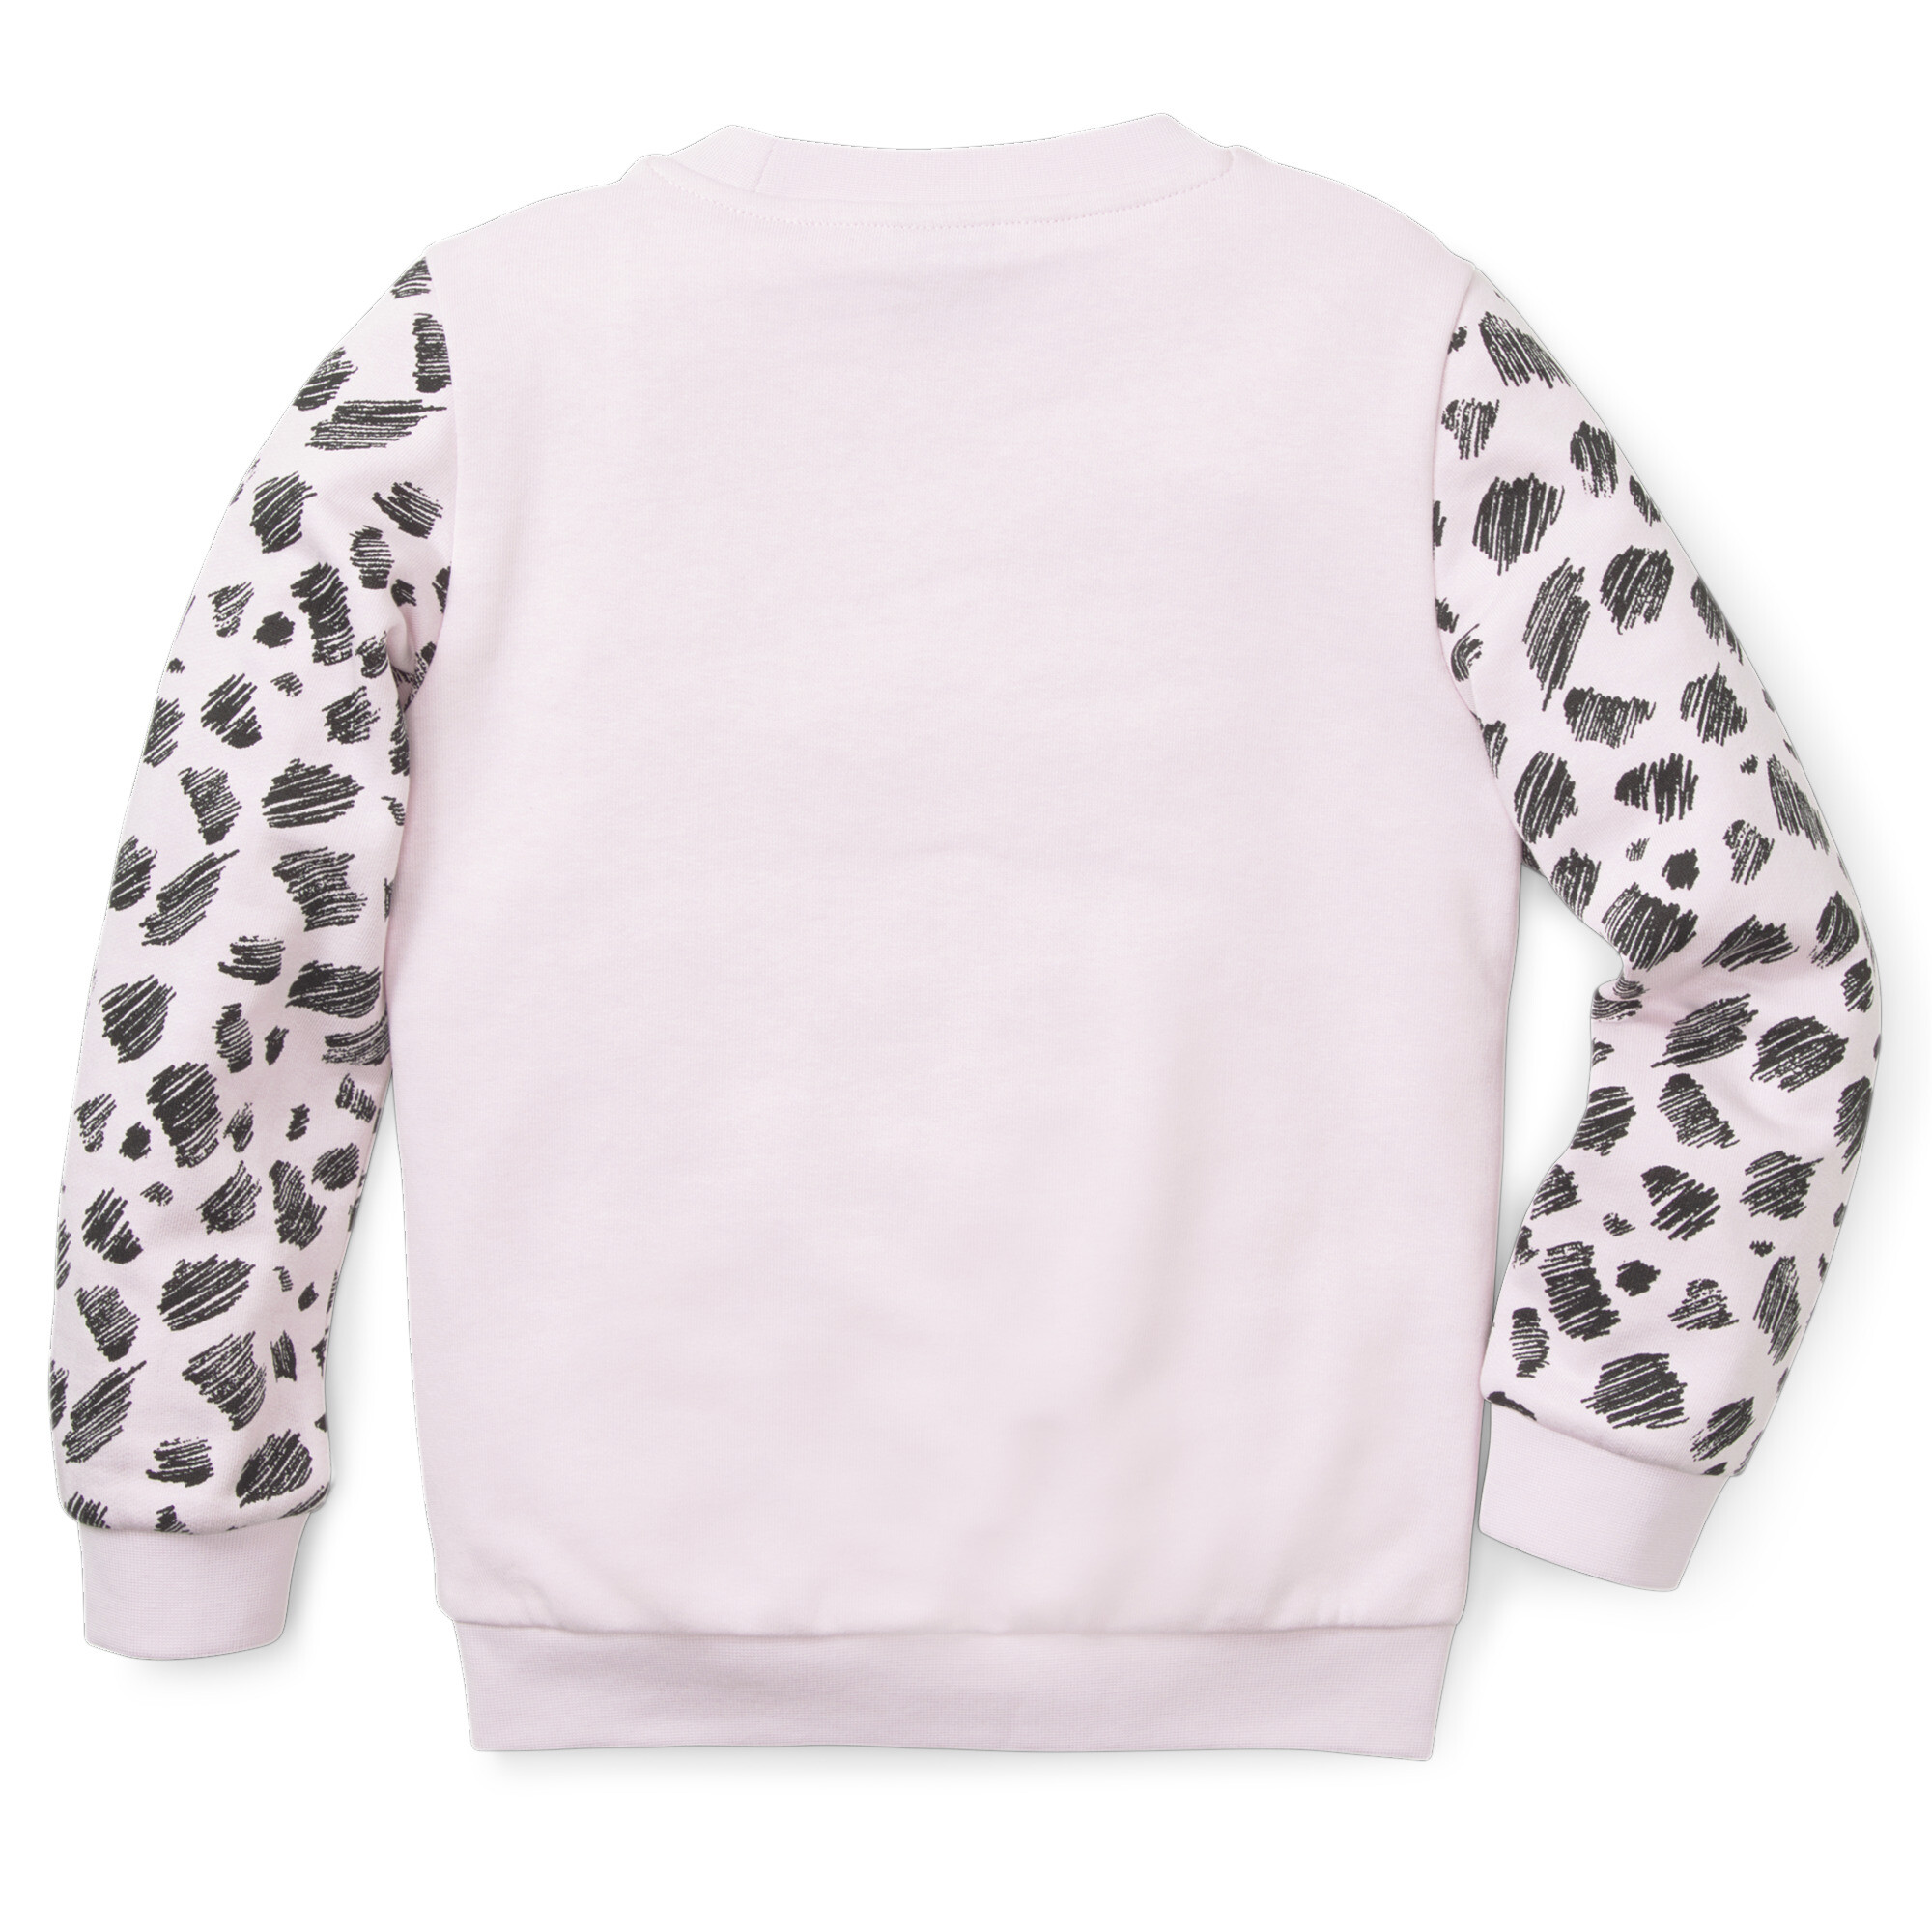 Essentials+ Puma Mates Crew Neck Kids Sweatshirt, Pink Sweatshirt, Size 1-2Y Sweatshirt, Clothing